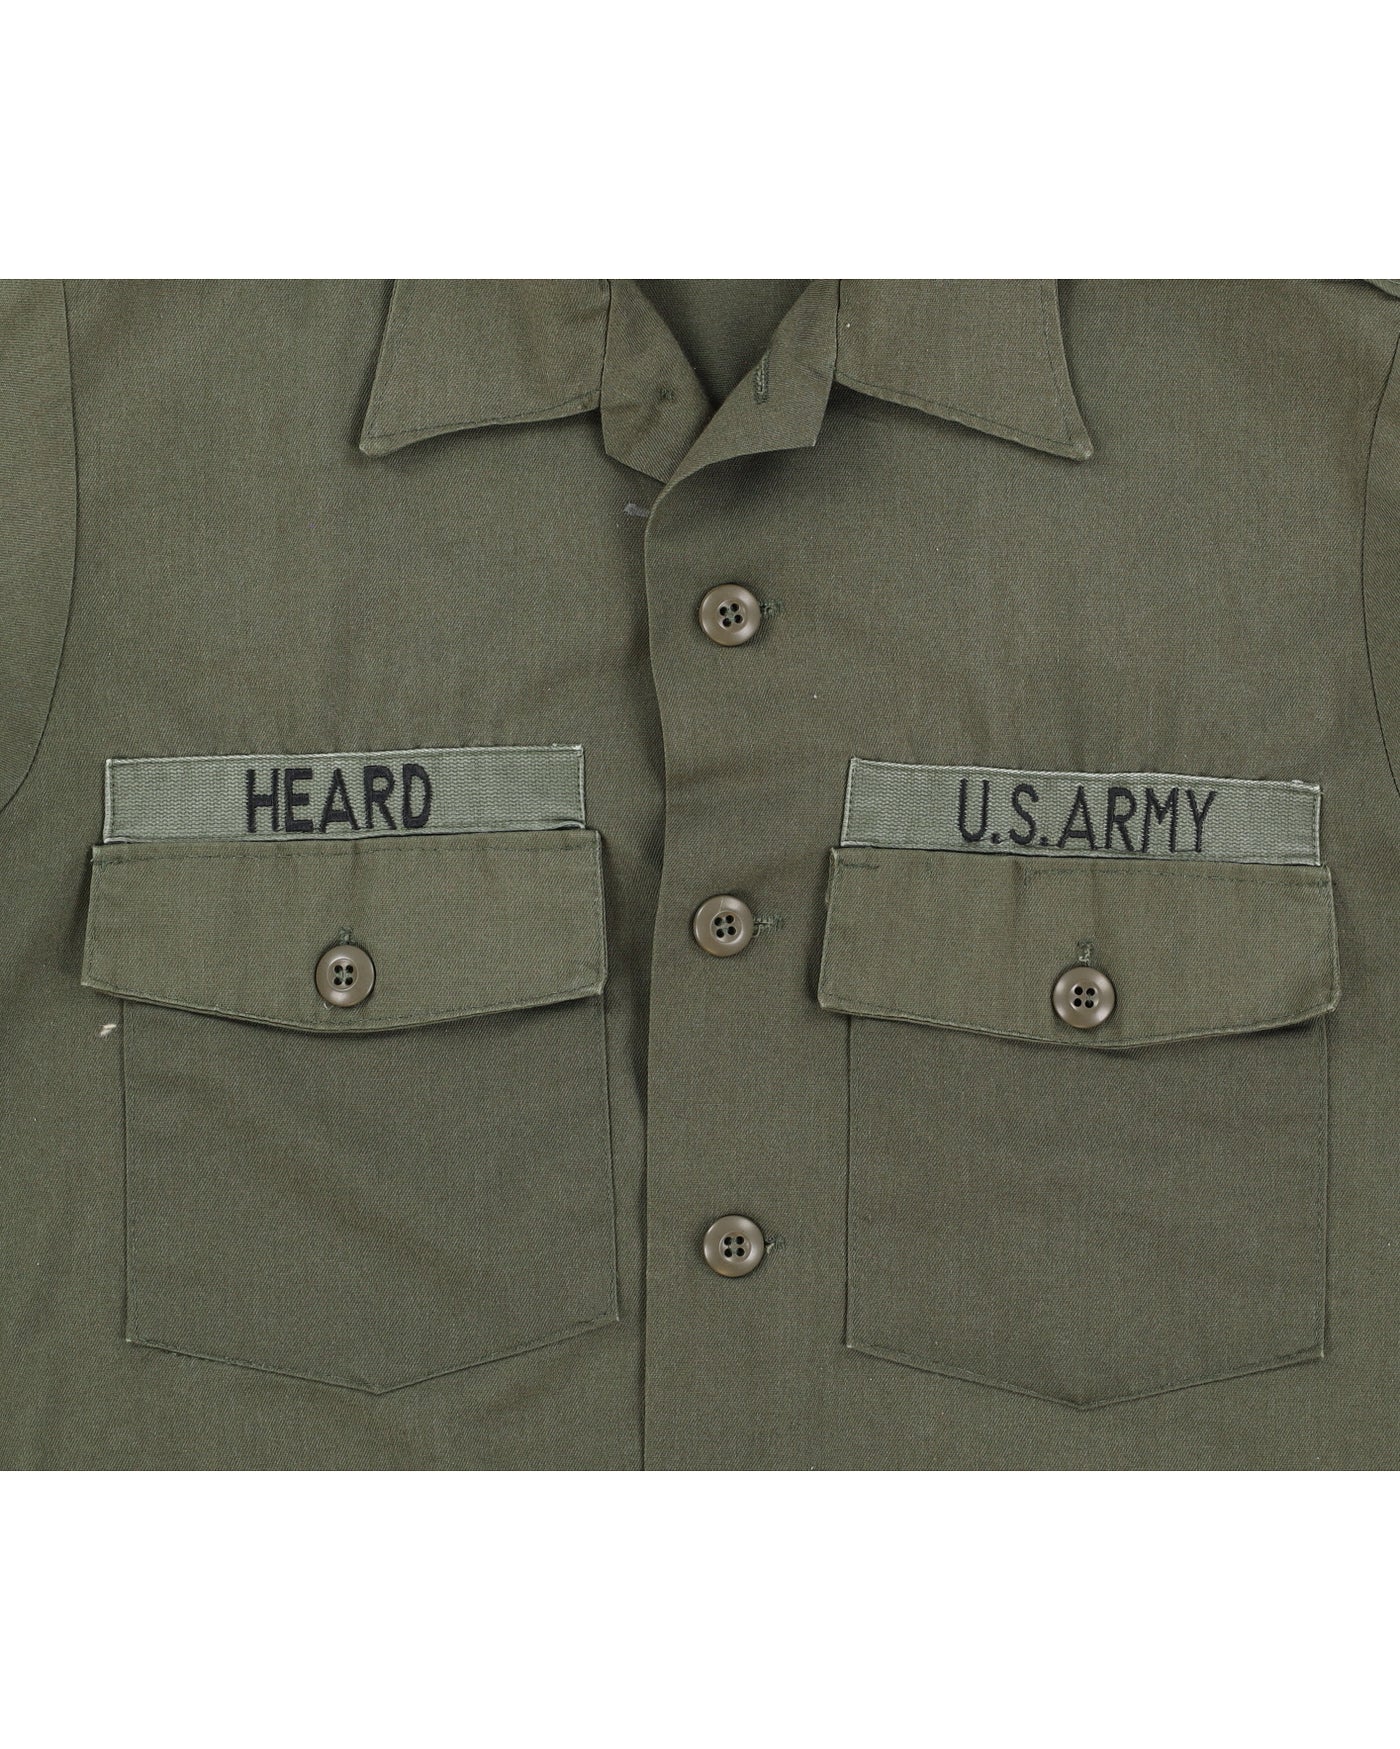 70s Vintage US Army OG-506 Shirt - L